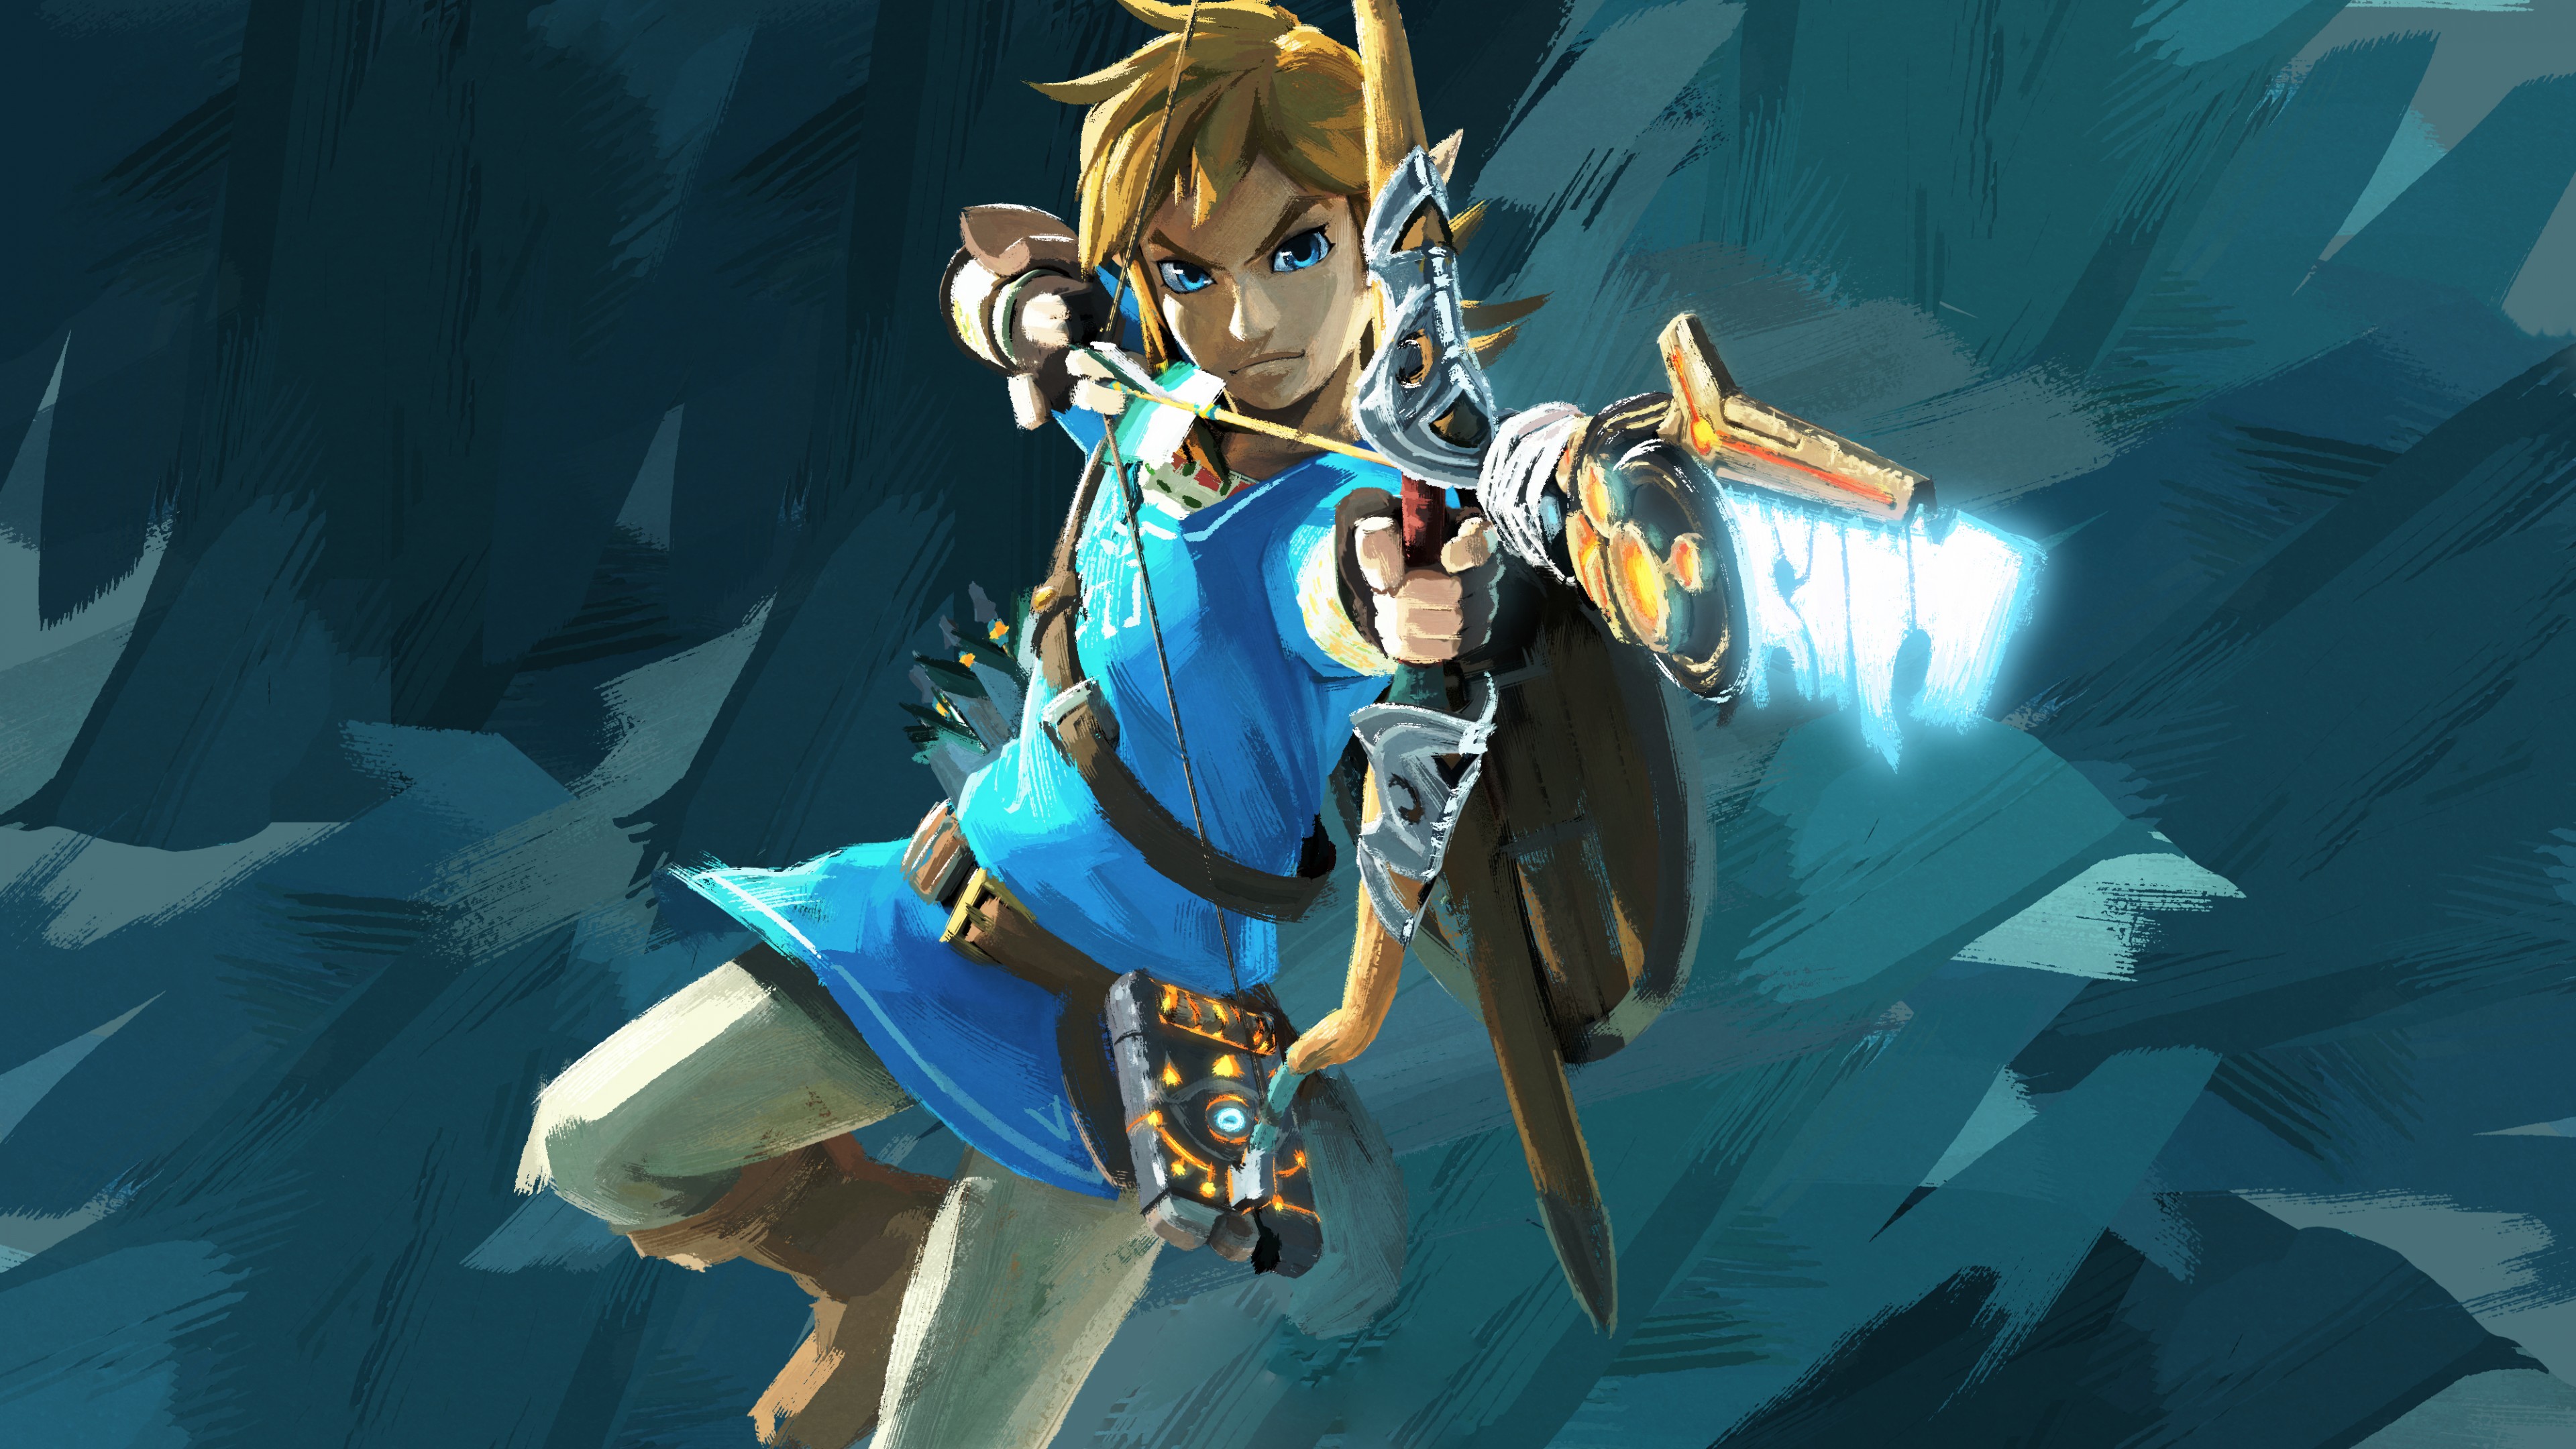 Wallpaper The Legend of Zelda: Breath of the Wild, best games